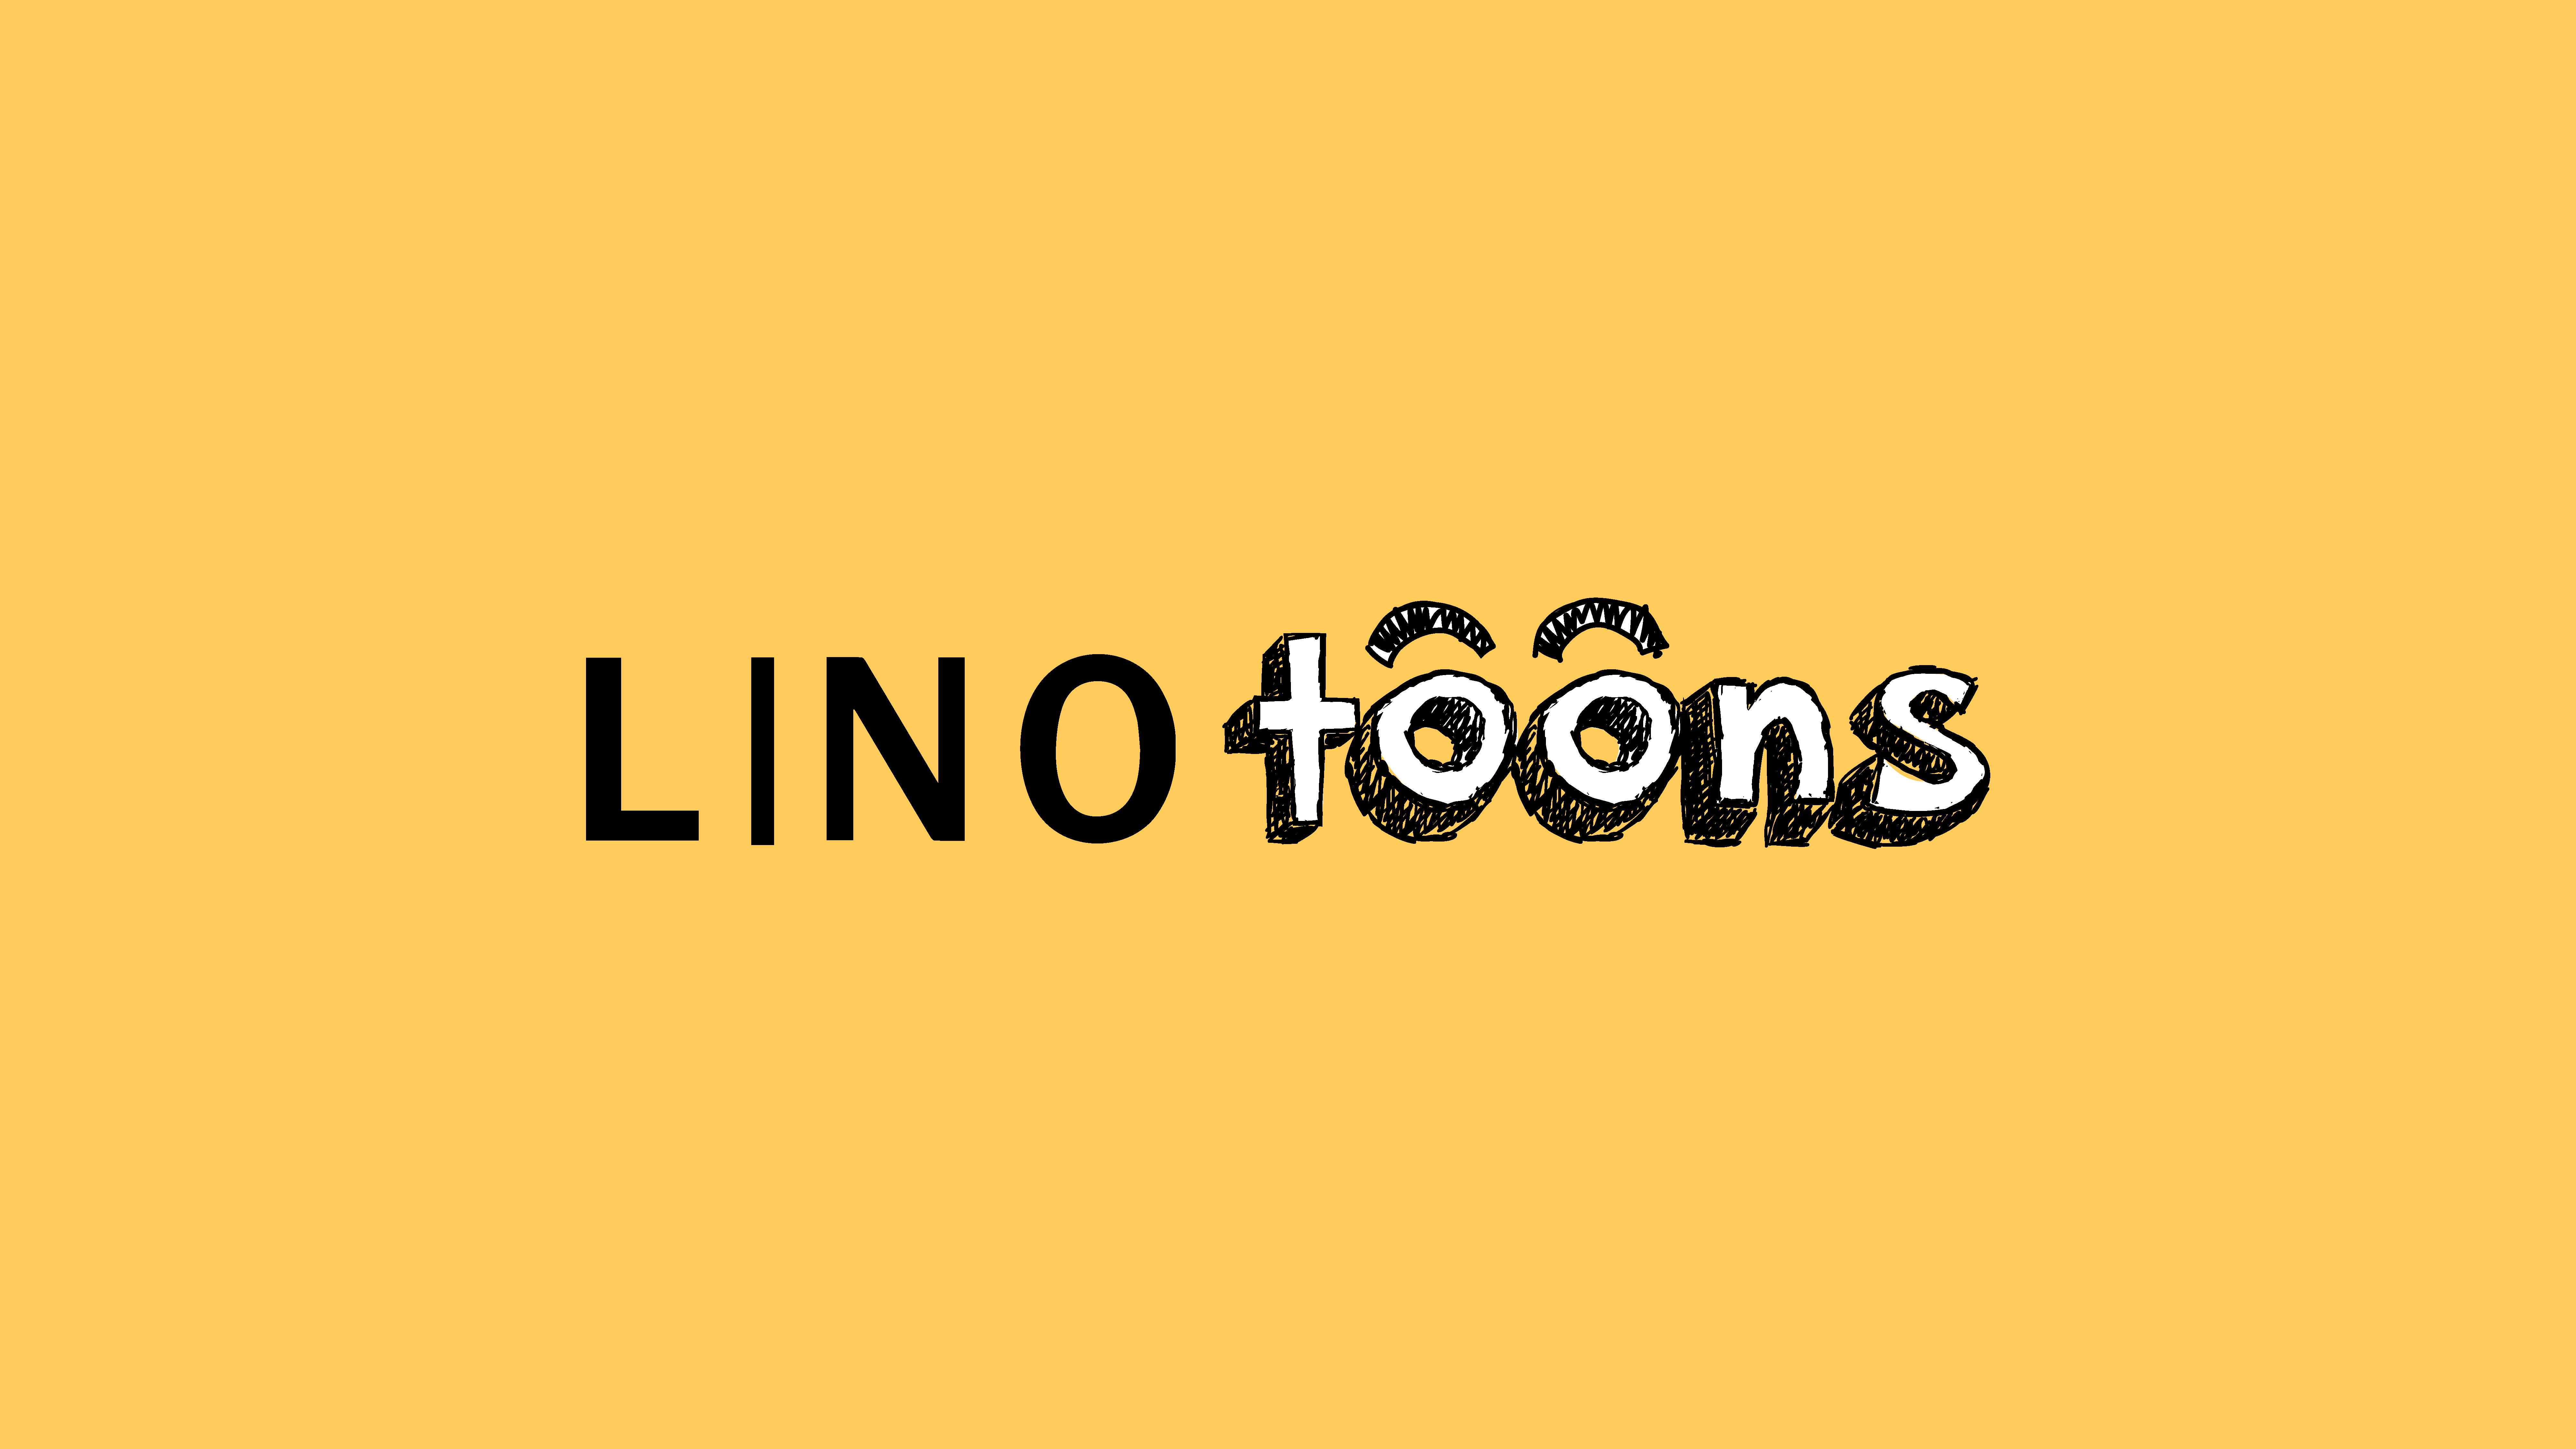 linotoons